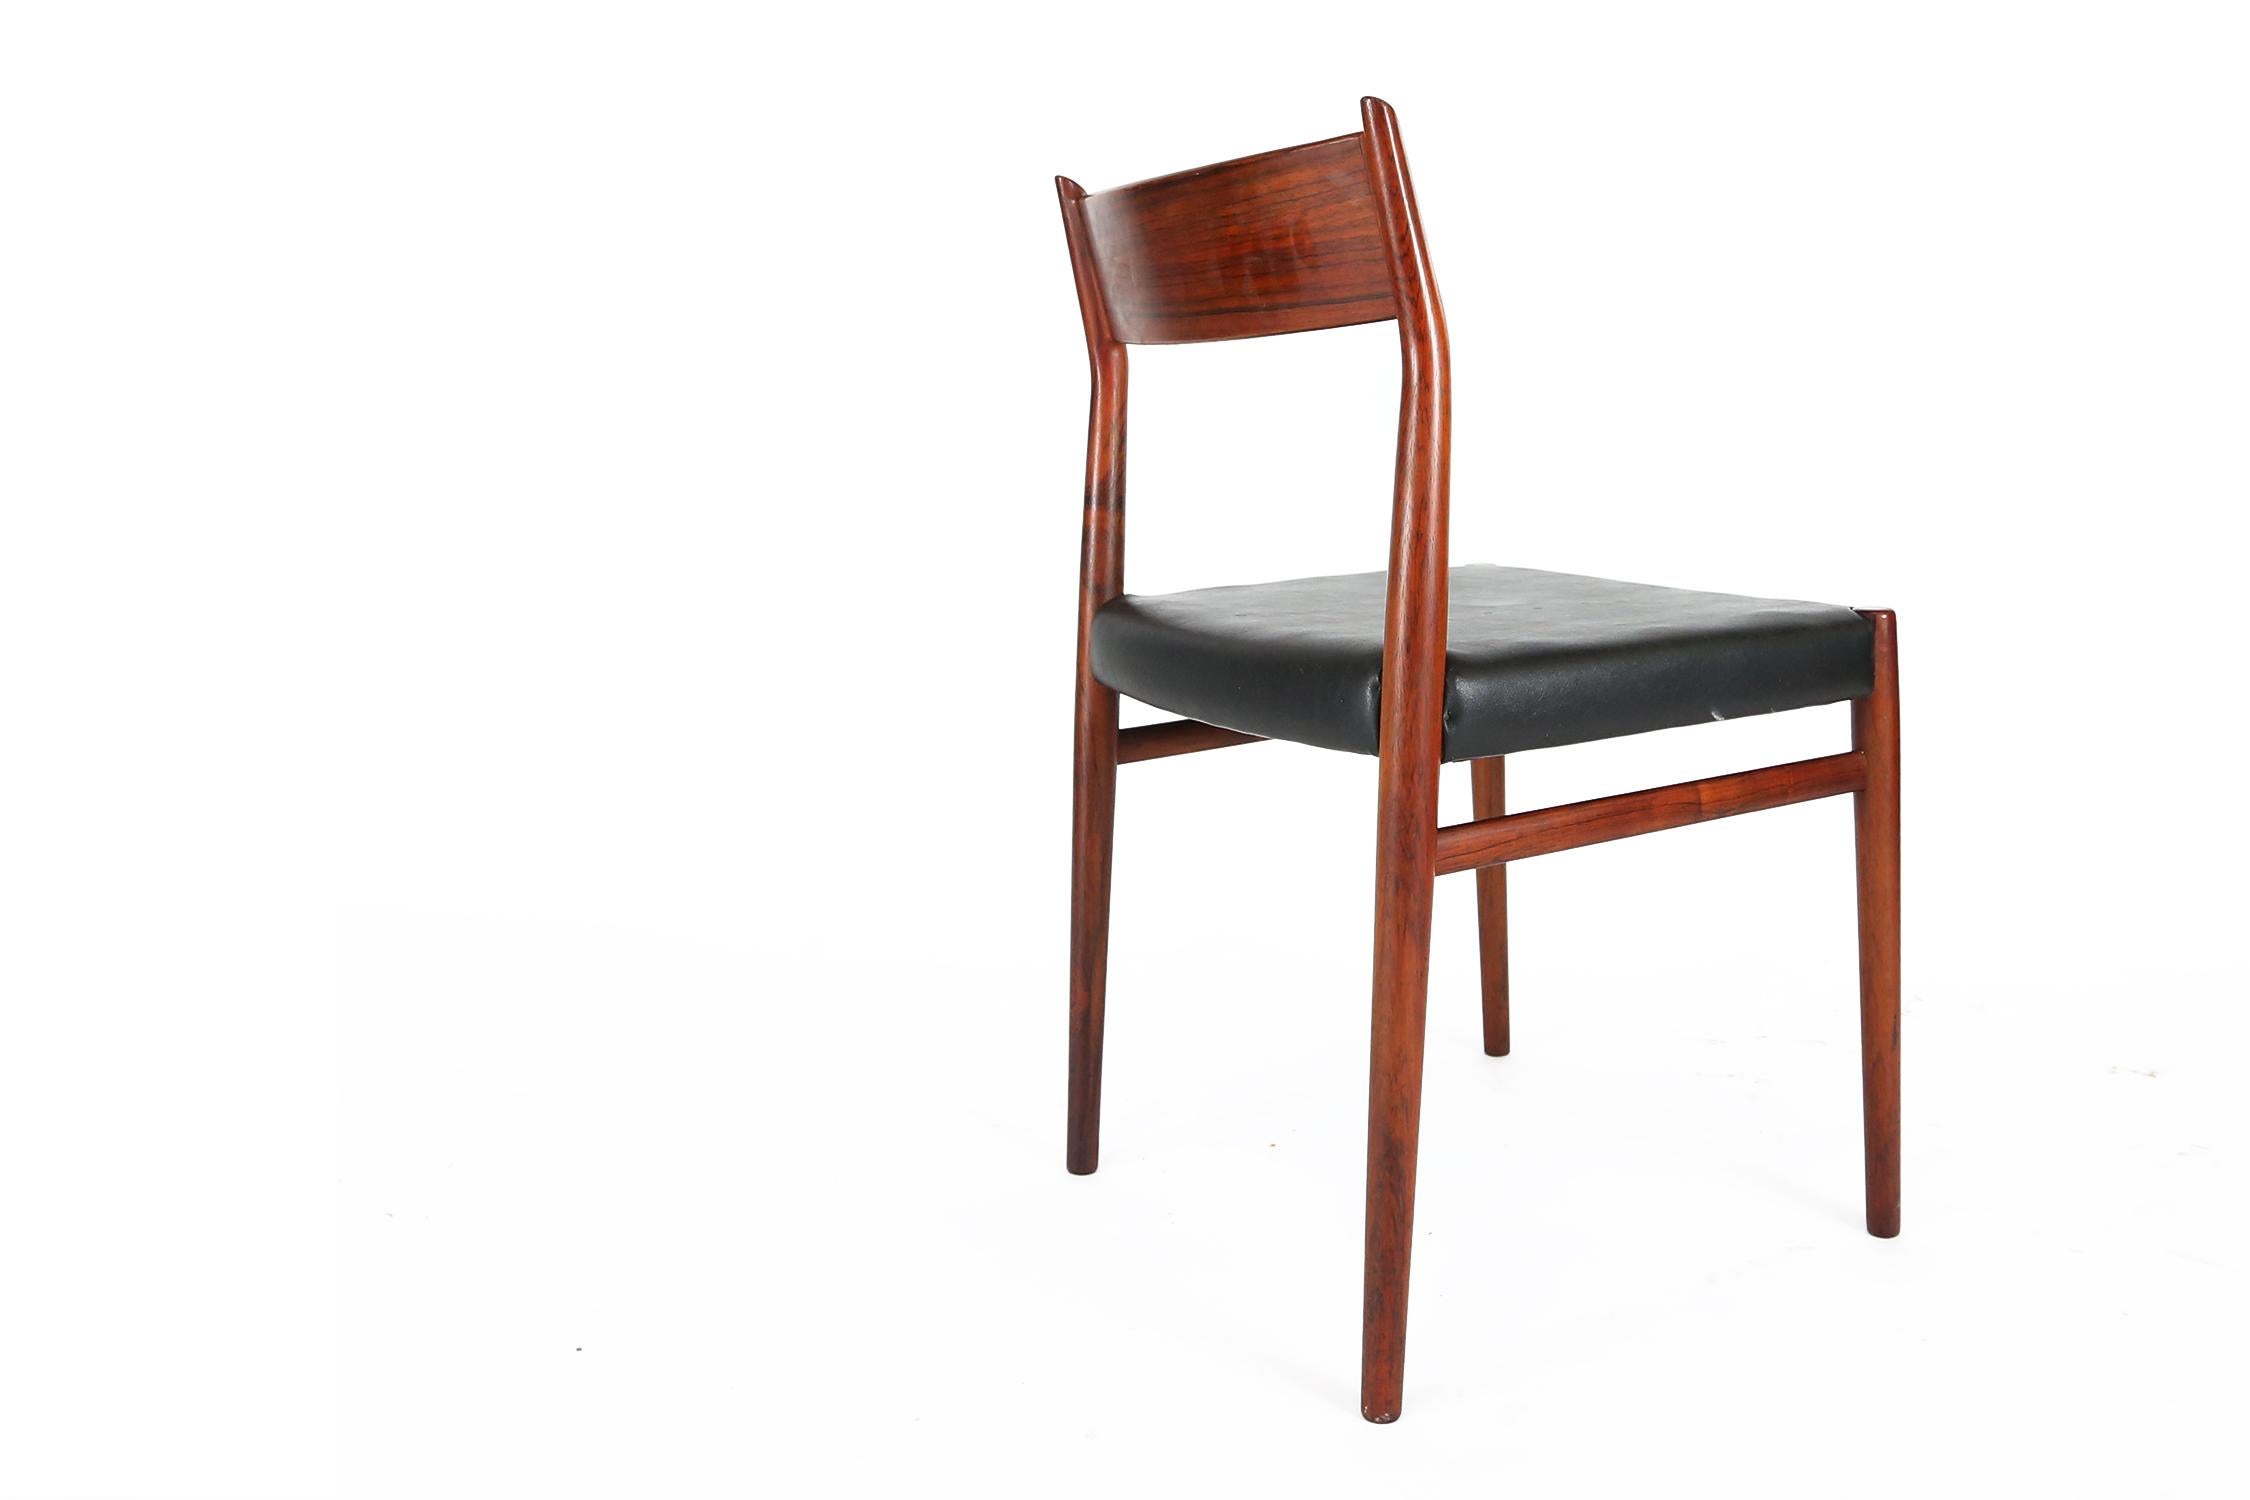  Arne Vodder Set of 8 Dining Chairs Model 418 Sibast Mobler, 1965 For Sale 1